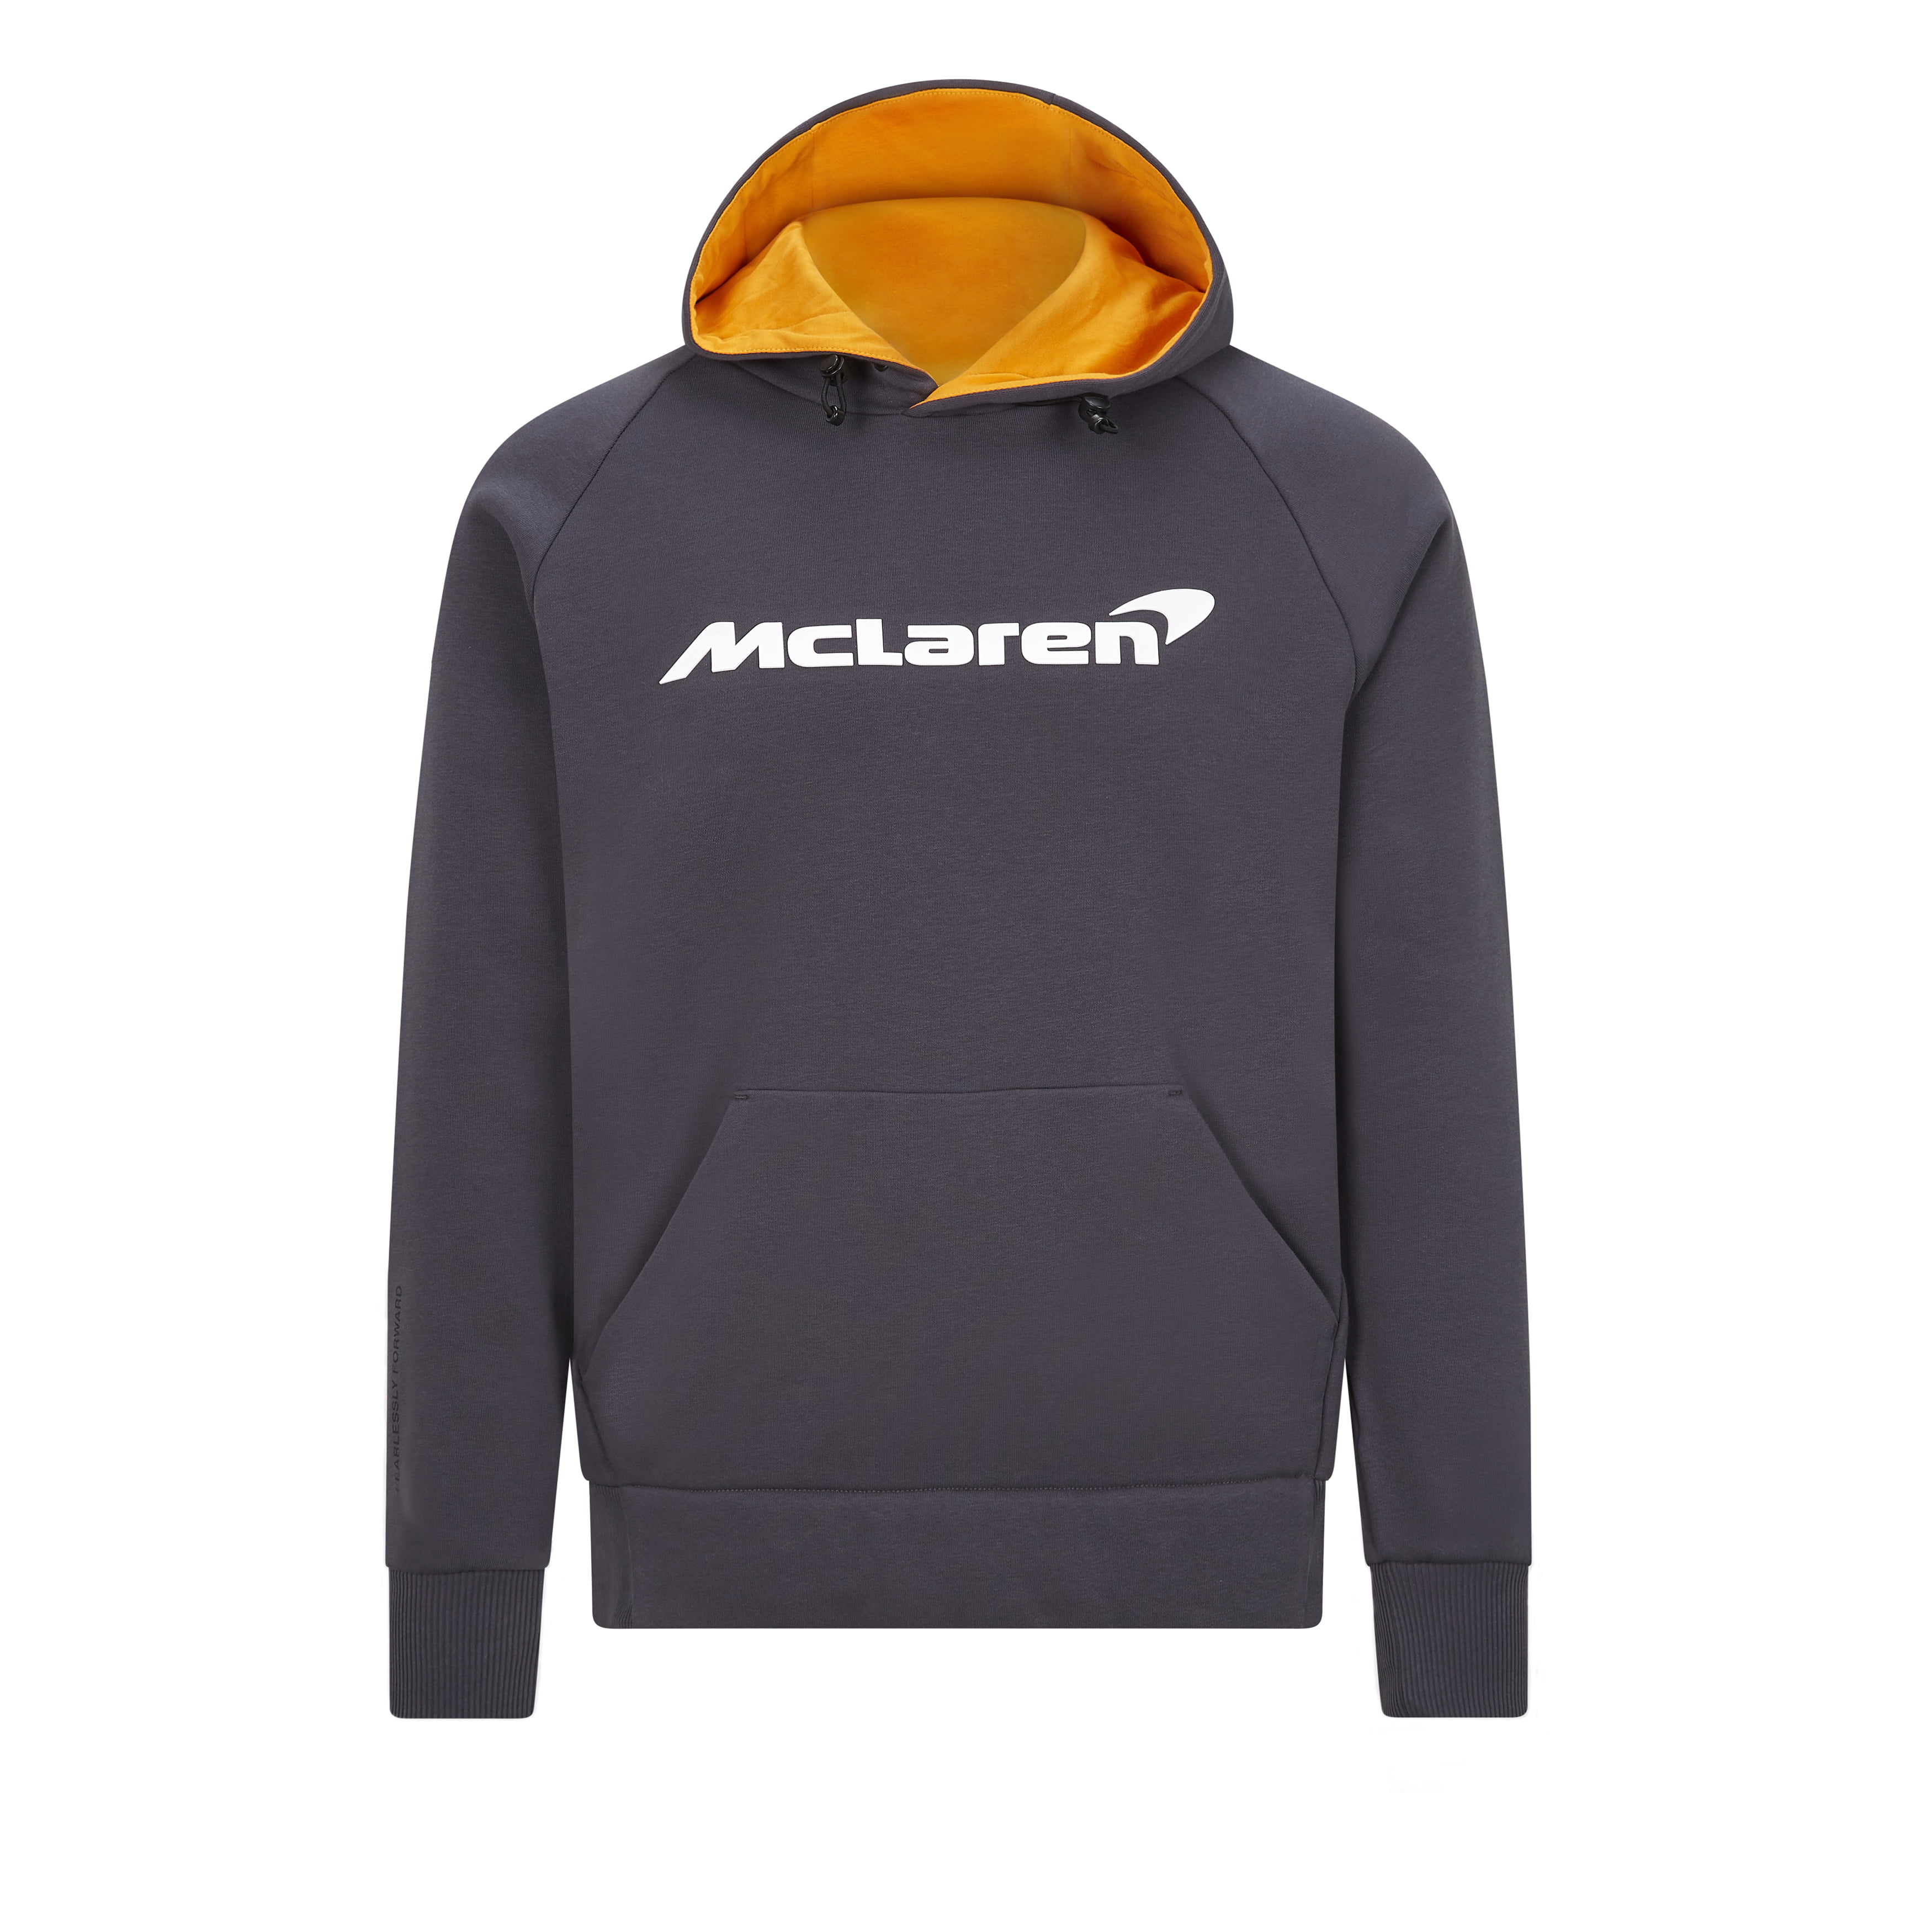 McLaren - McLaren F1 Men's Essentials Sweatshirt Hoodie Anthracite Size ...